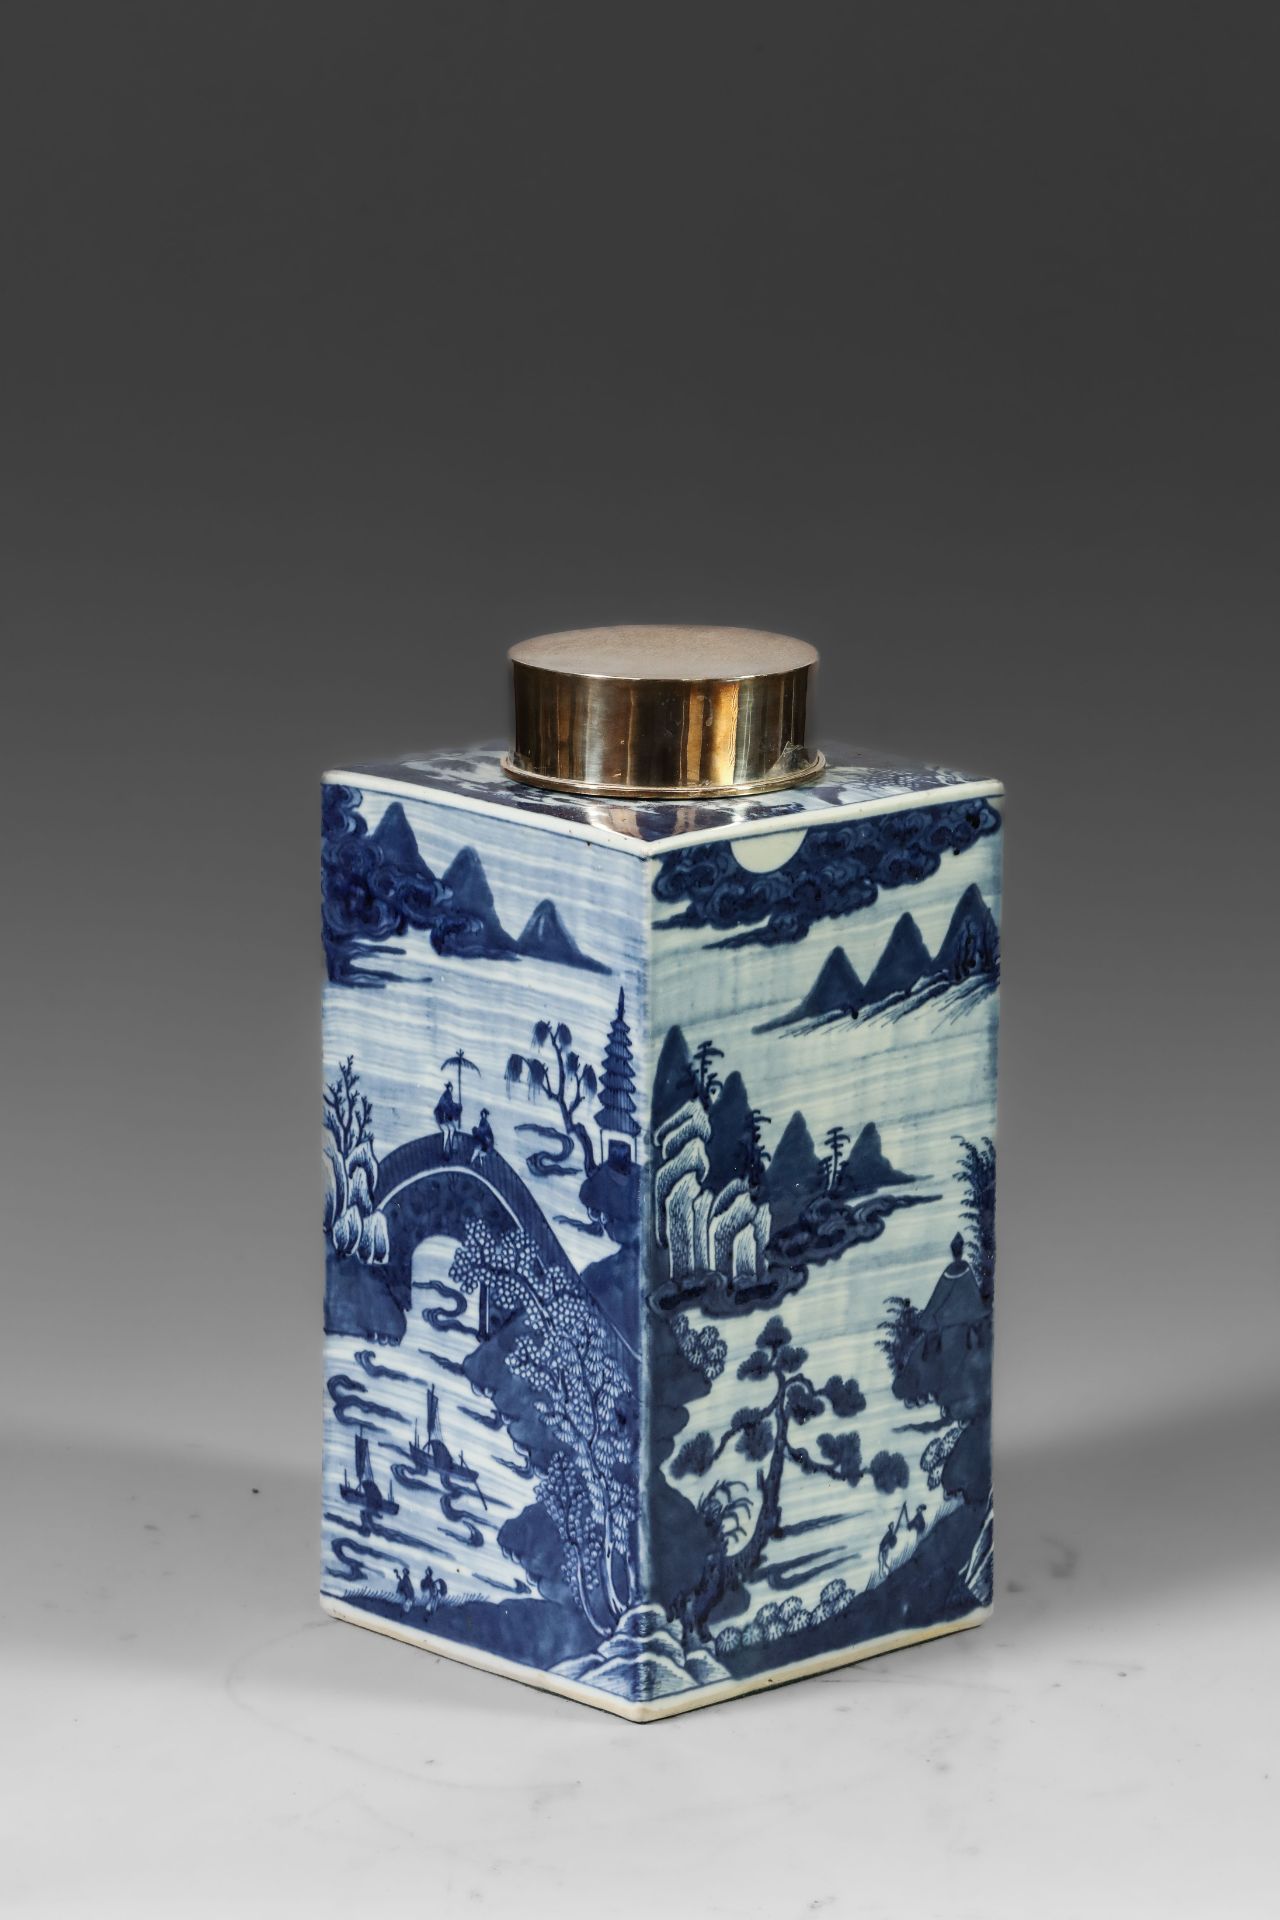 Suite de neuf pots à thé quadrangulaire en porcelaine blanche décoré en bleu sous couverte de - Image 6 of 47